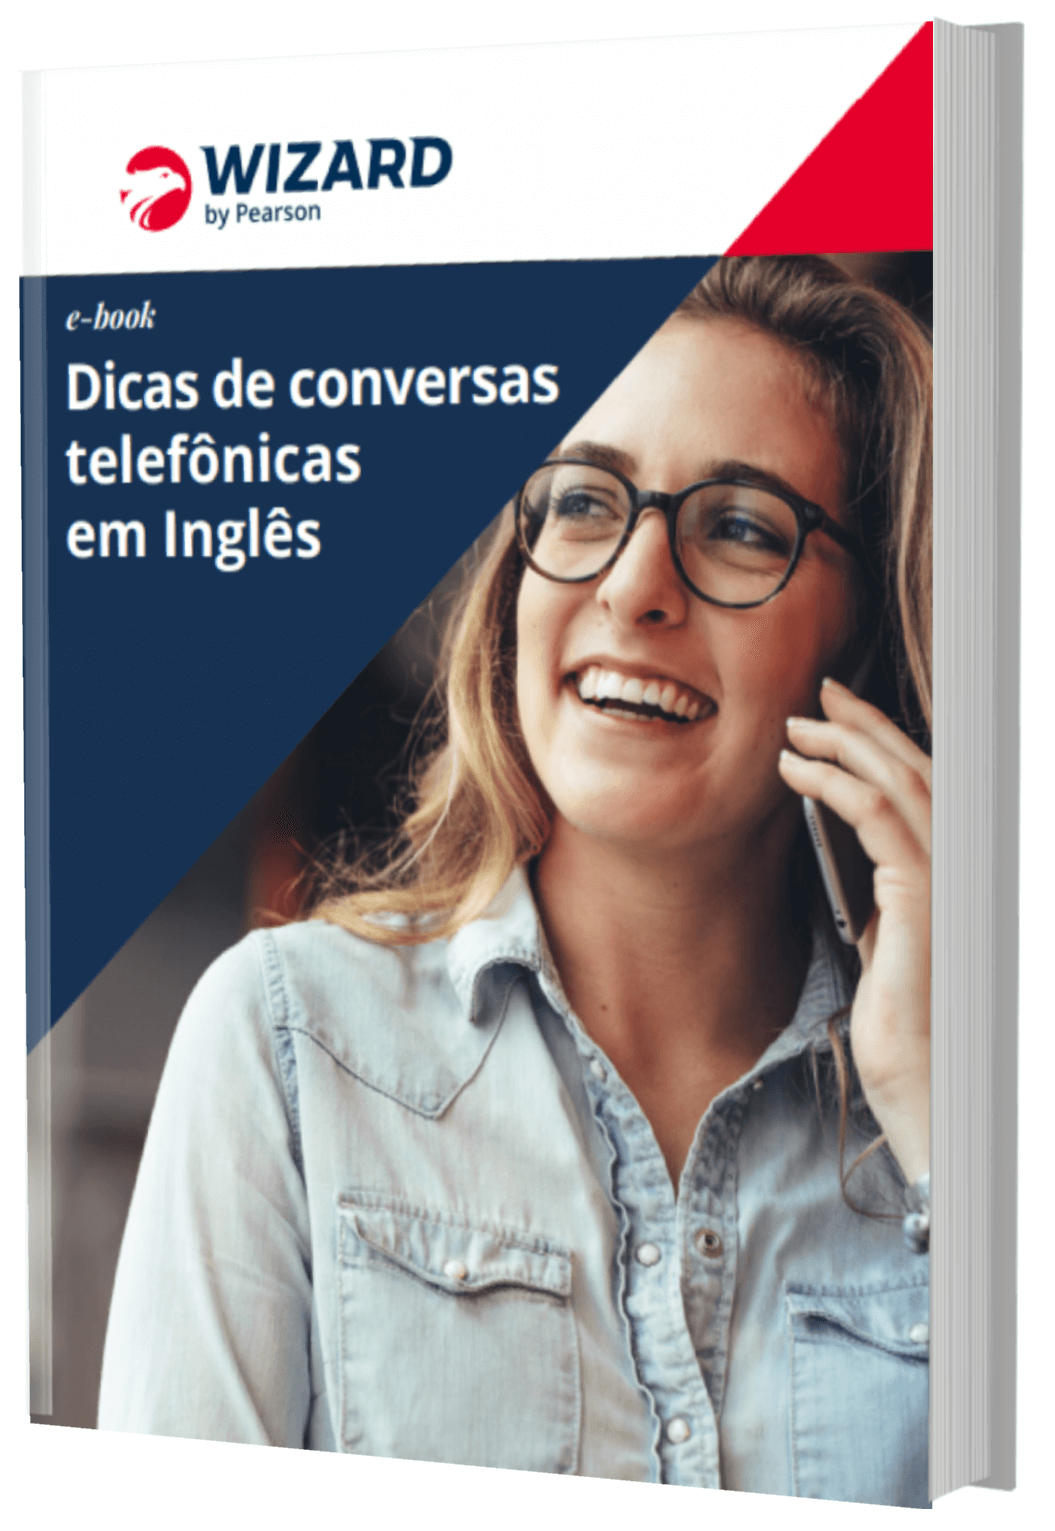 UCDB Idiomas lança curso específico de conversação em inglês